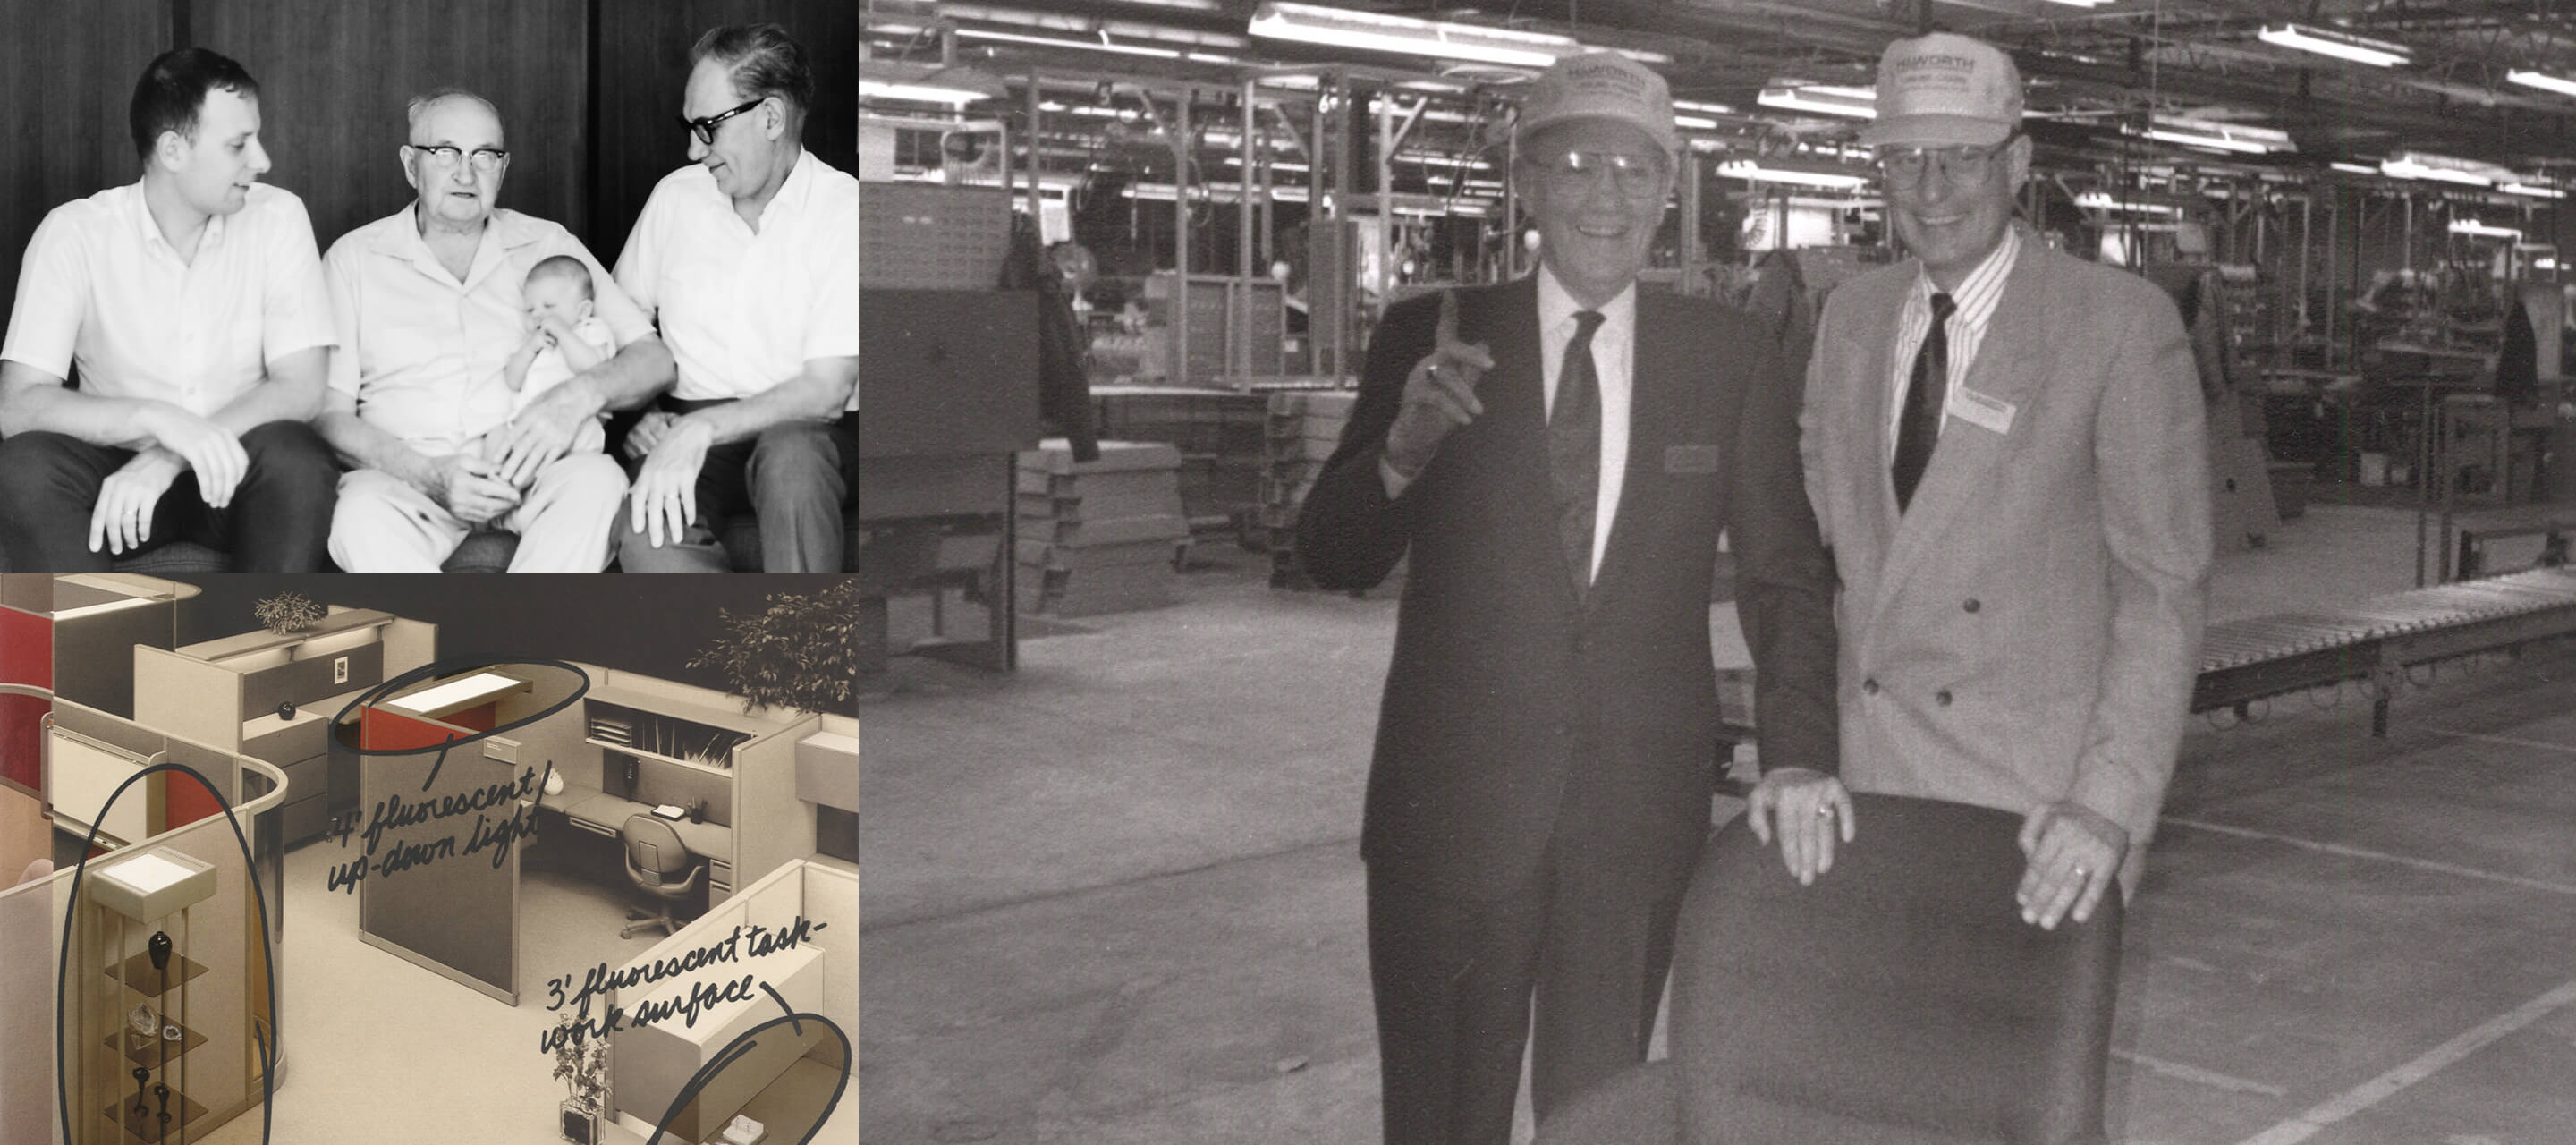 Années 60 —​ En 1969, Dick, le fils de ​G.W., rentre de son service militaire et devient responsable de la fabrication et du développement de nouveaux produits. Son objectif est de produire un système modulaire de bureaux. Dick dirigera la société en tant que président de 1994 à 2009, jusqu’à ce que son fils Matthew prenne sa suite.